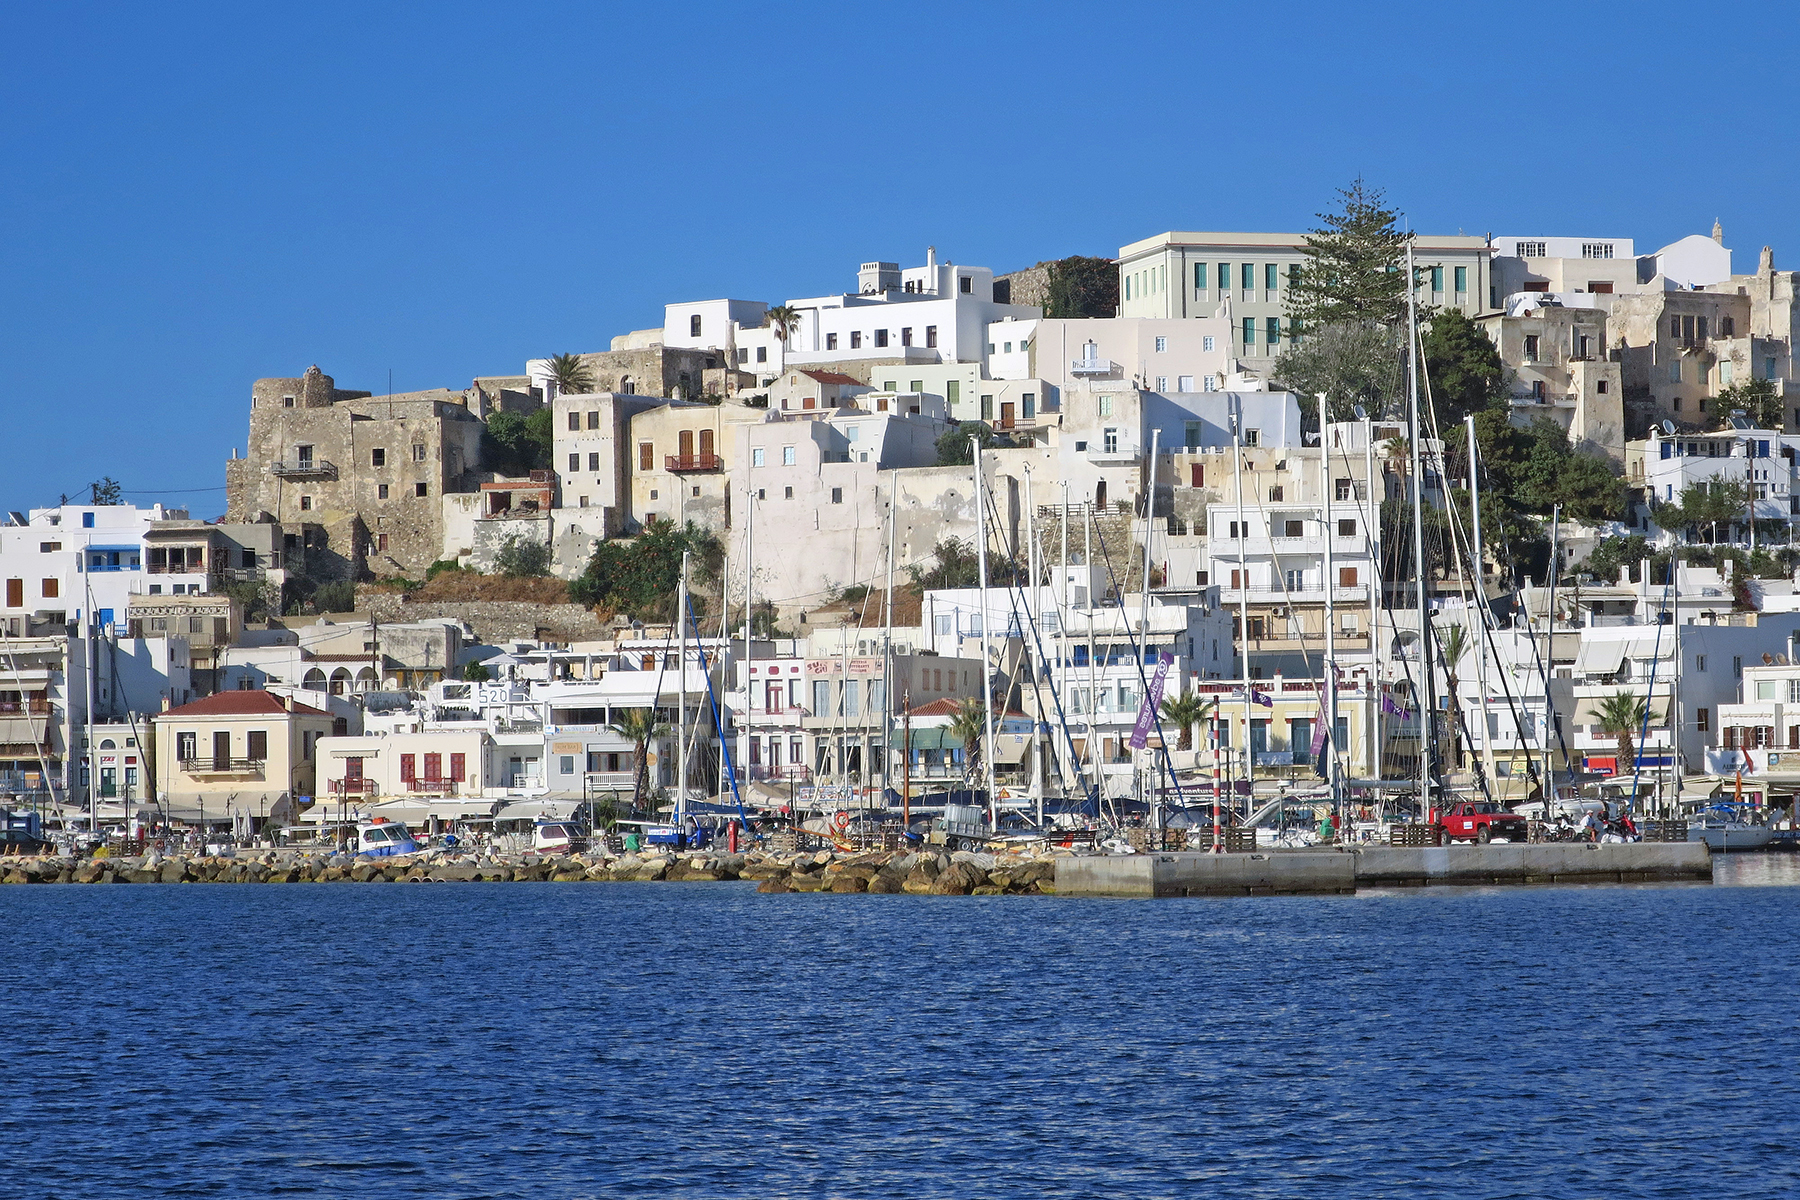 Kykladeninsel Naxos: Urlaub machen, wo Götter einst Geschichten erzählten 